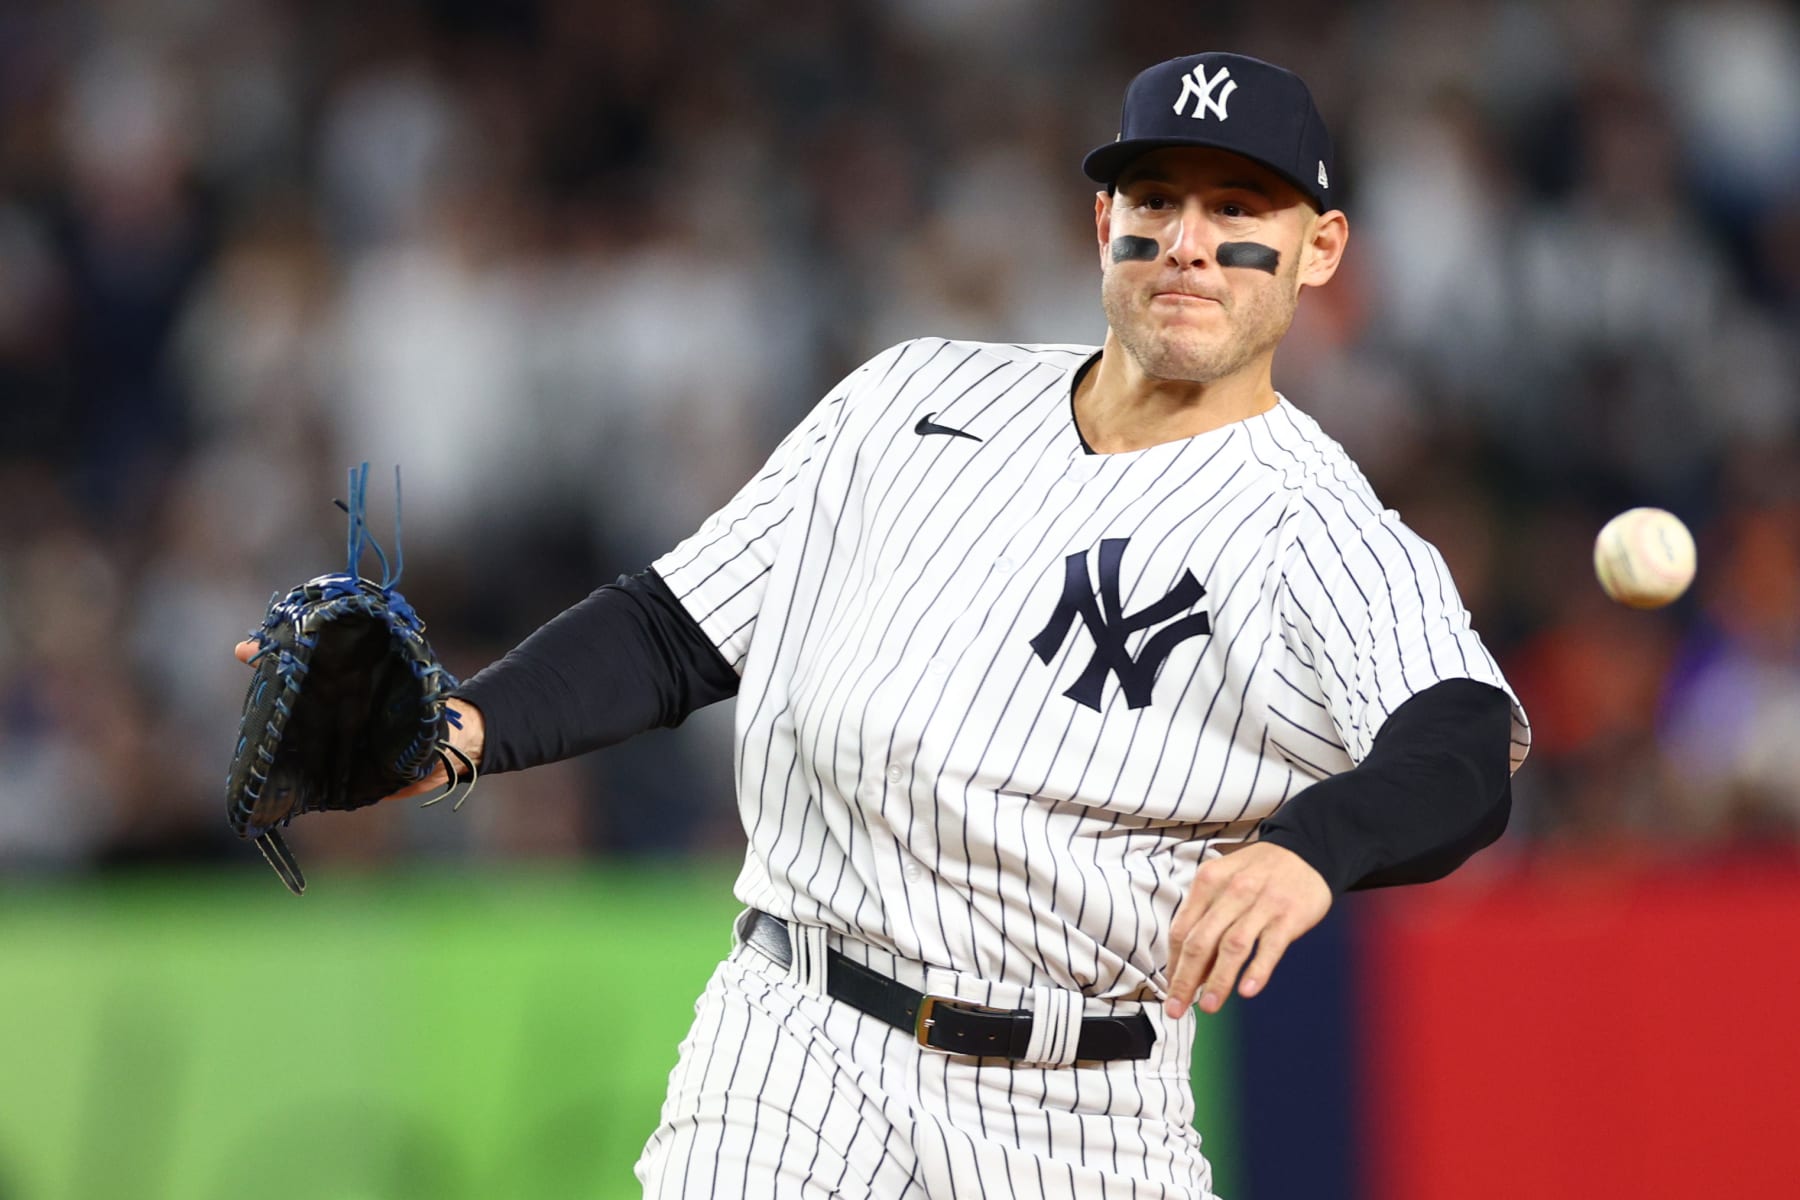 New York Yankees' star Luke Voit is among elite first basemen